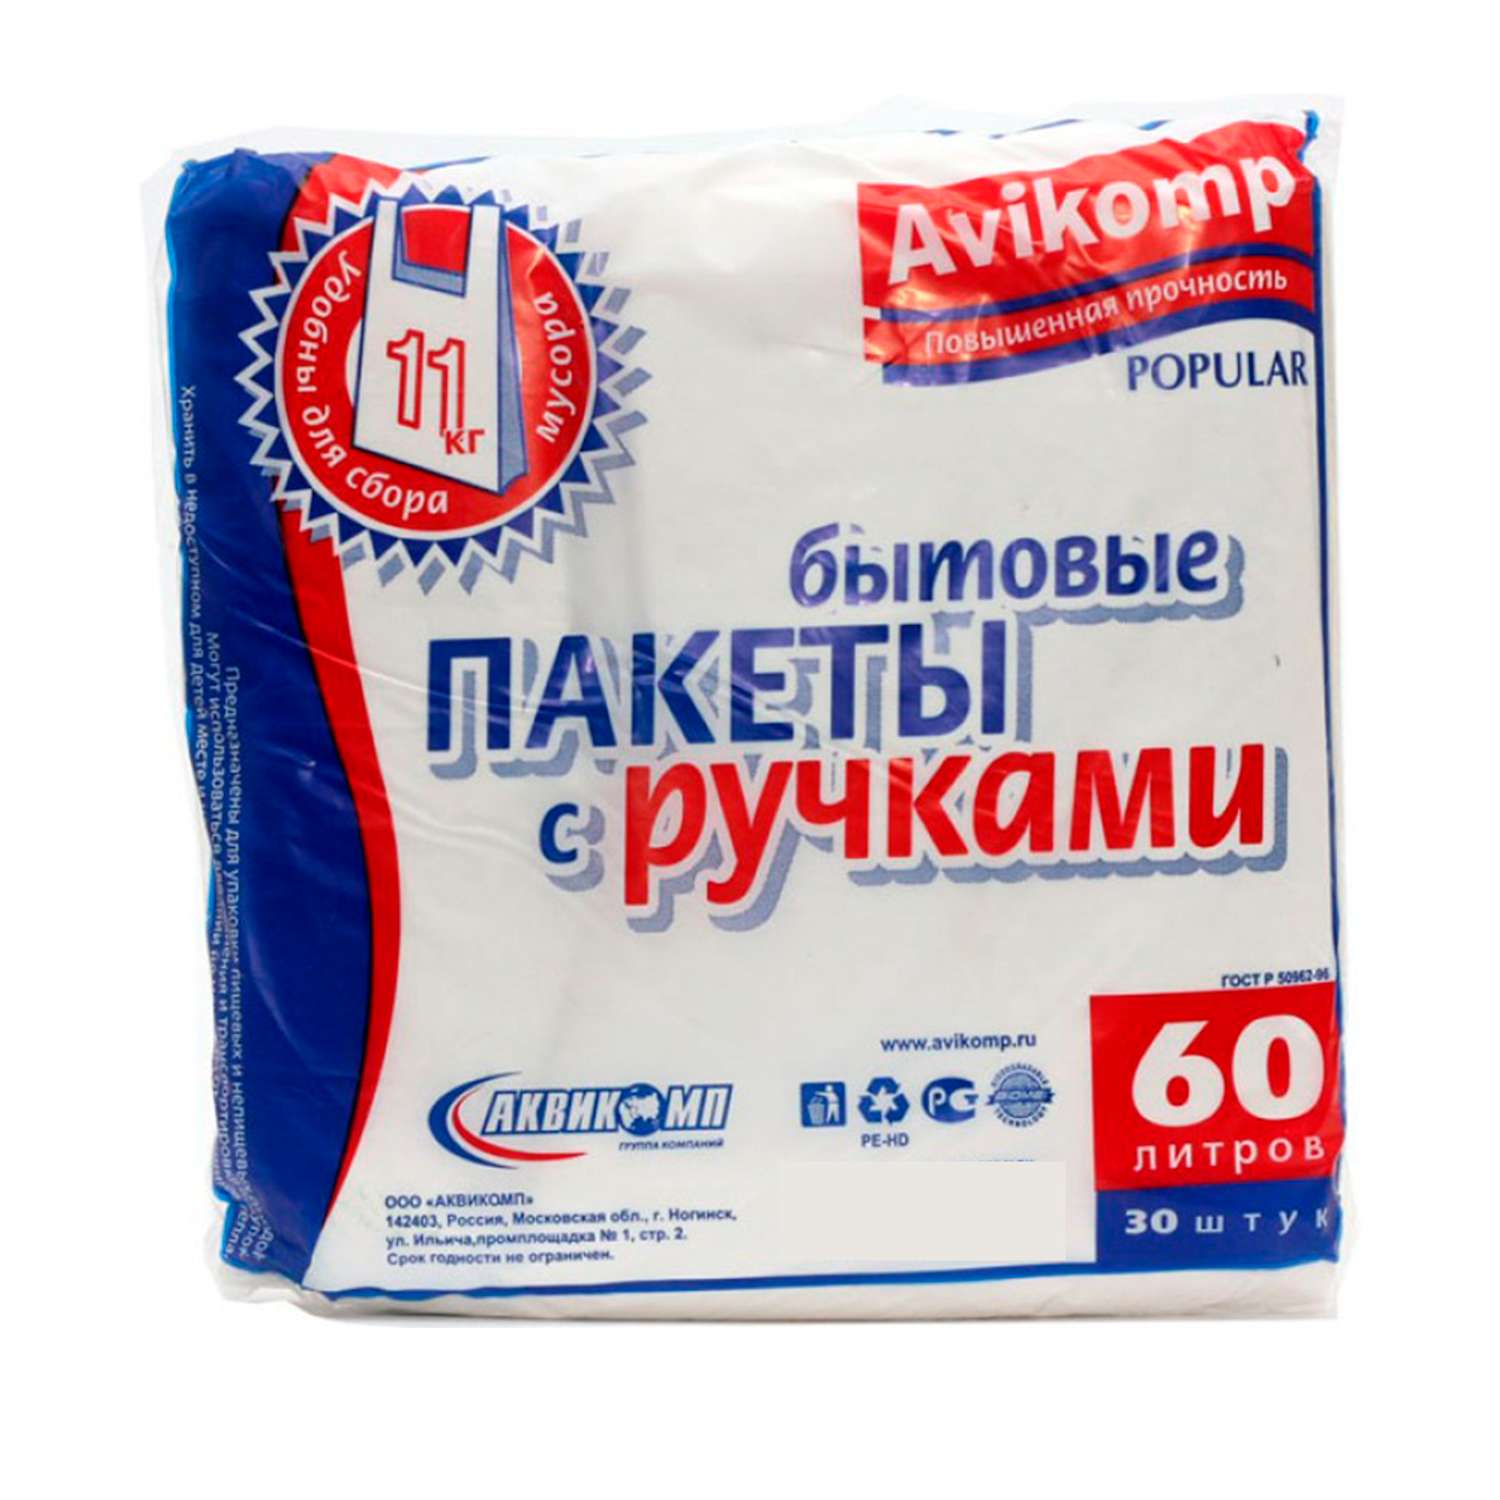 Мешки для мусора Avikomp с ручками 60 л 30 шт Белые - фото 1